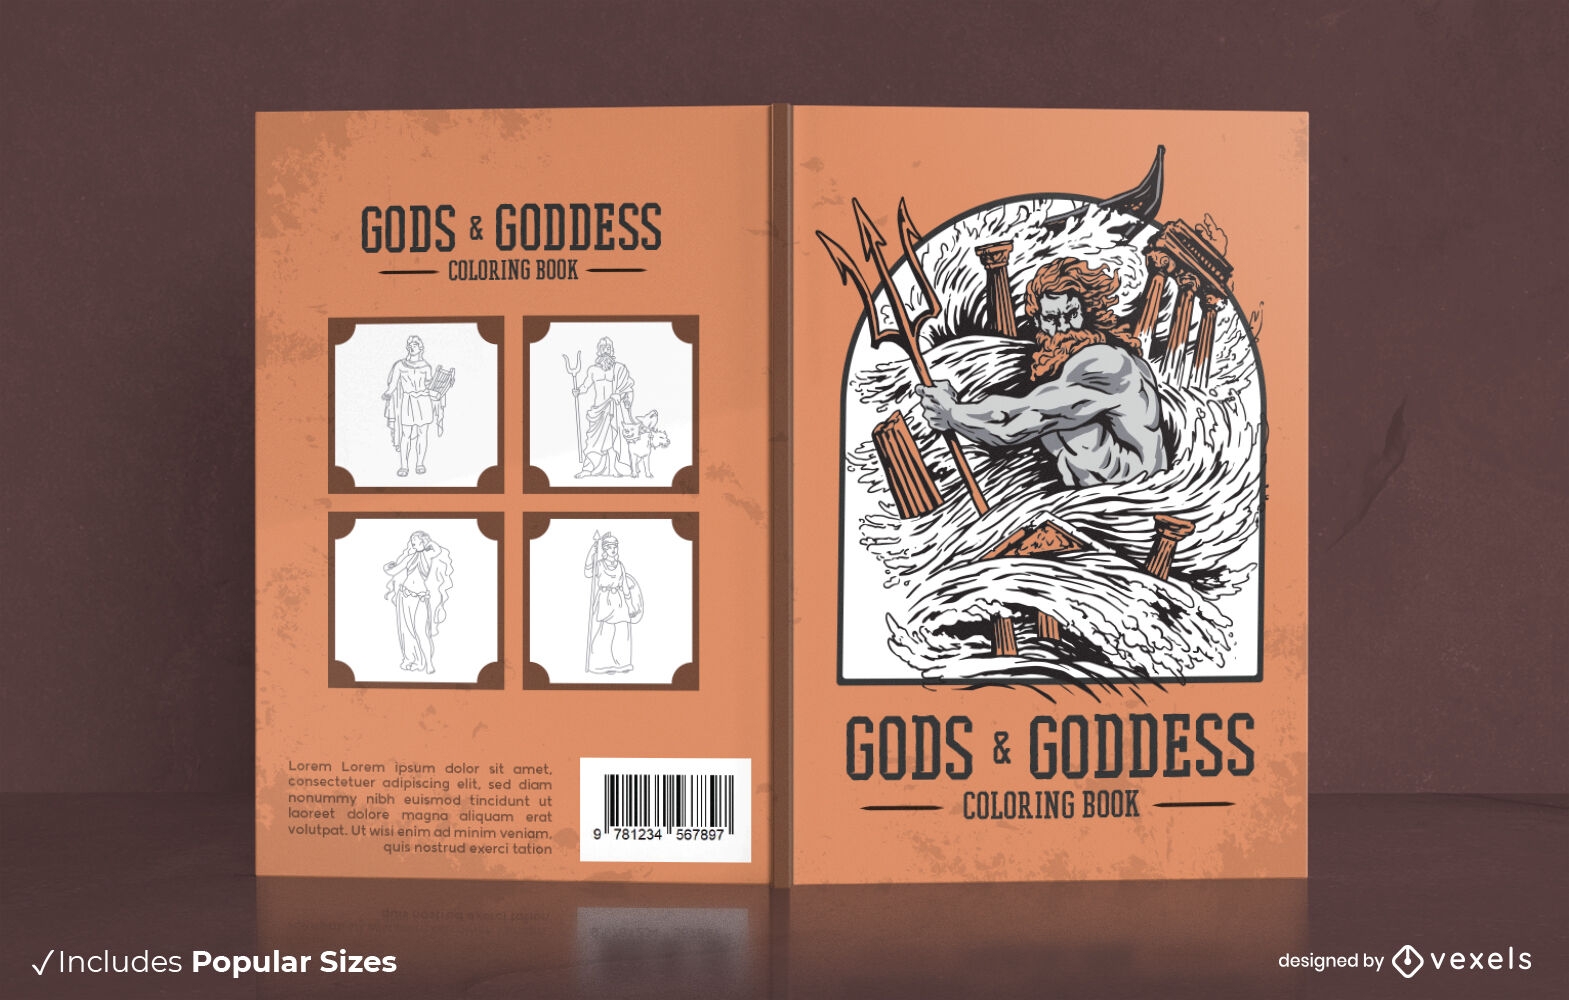 Diseño de portada de libro para colorear de dioses y diosas